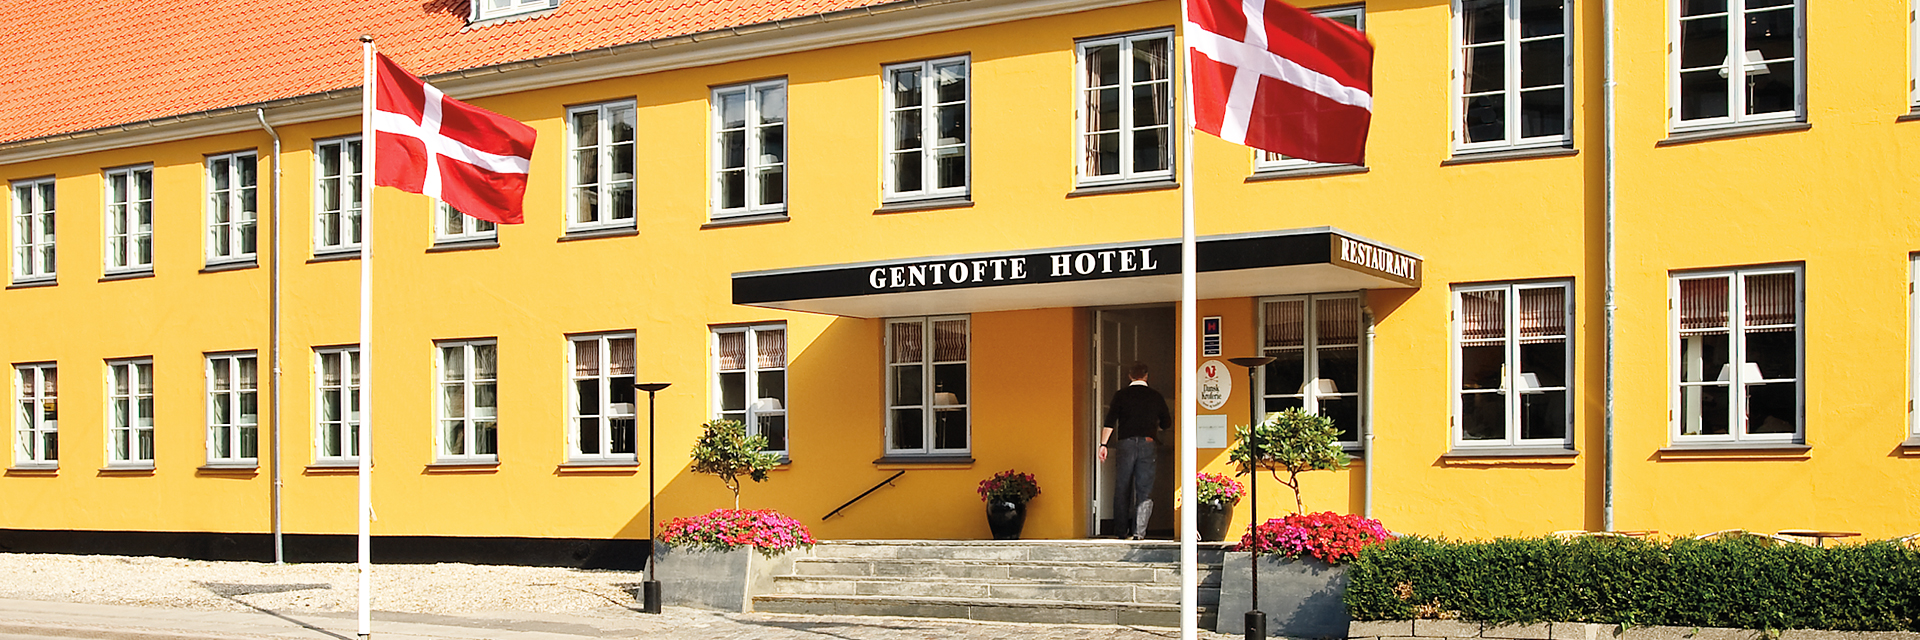 deformation historie Milliard Gentofte Hotel | Miniferie i Nordsjælland og tæt på København C